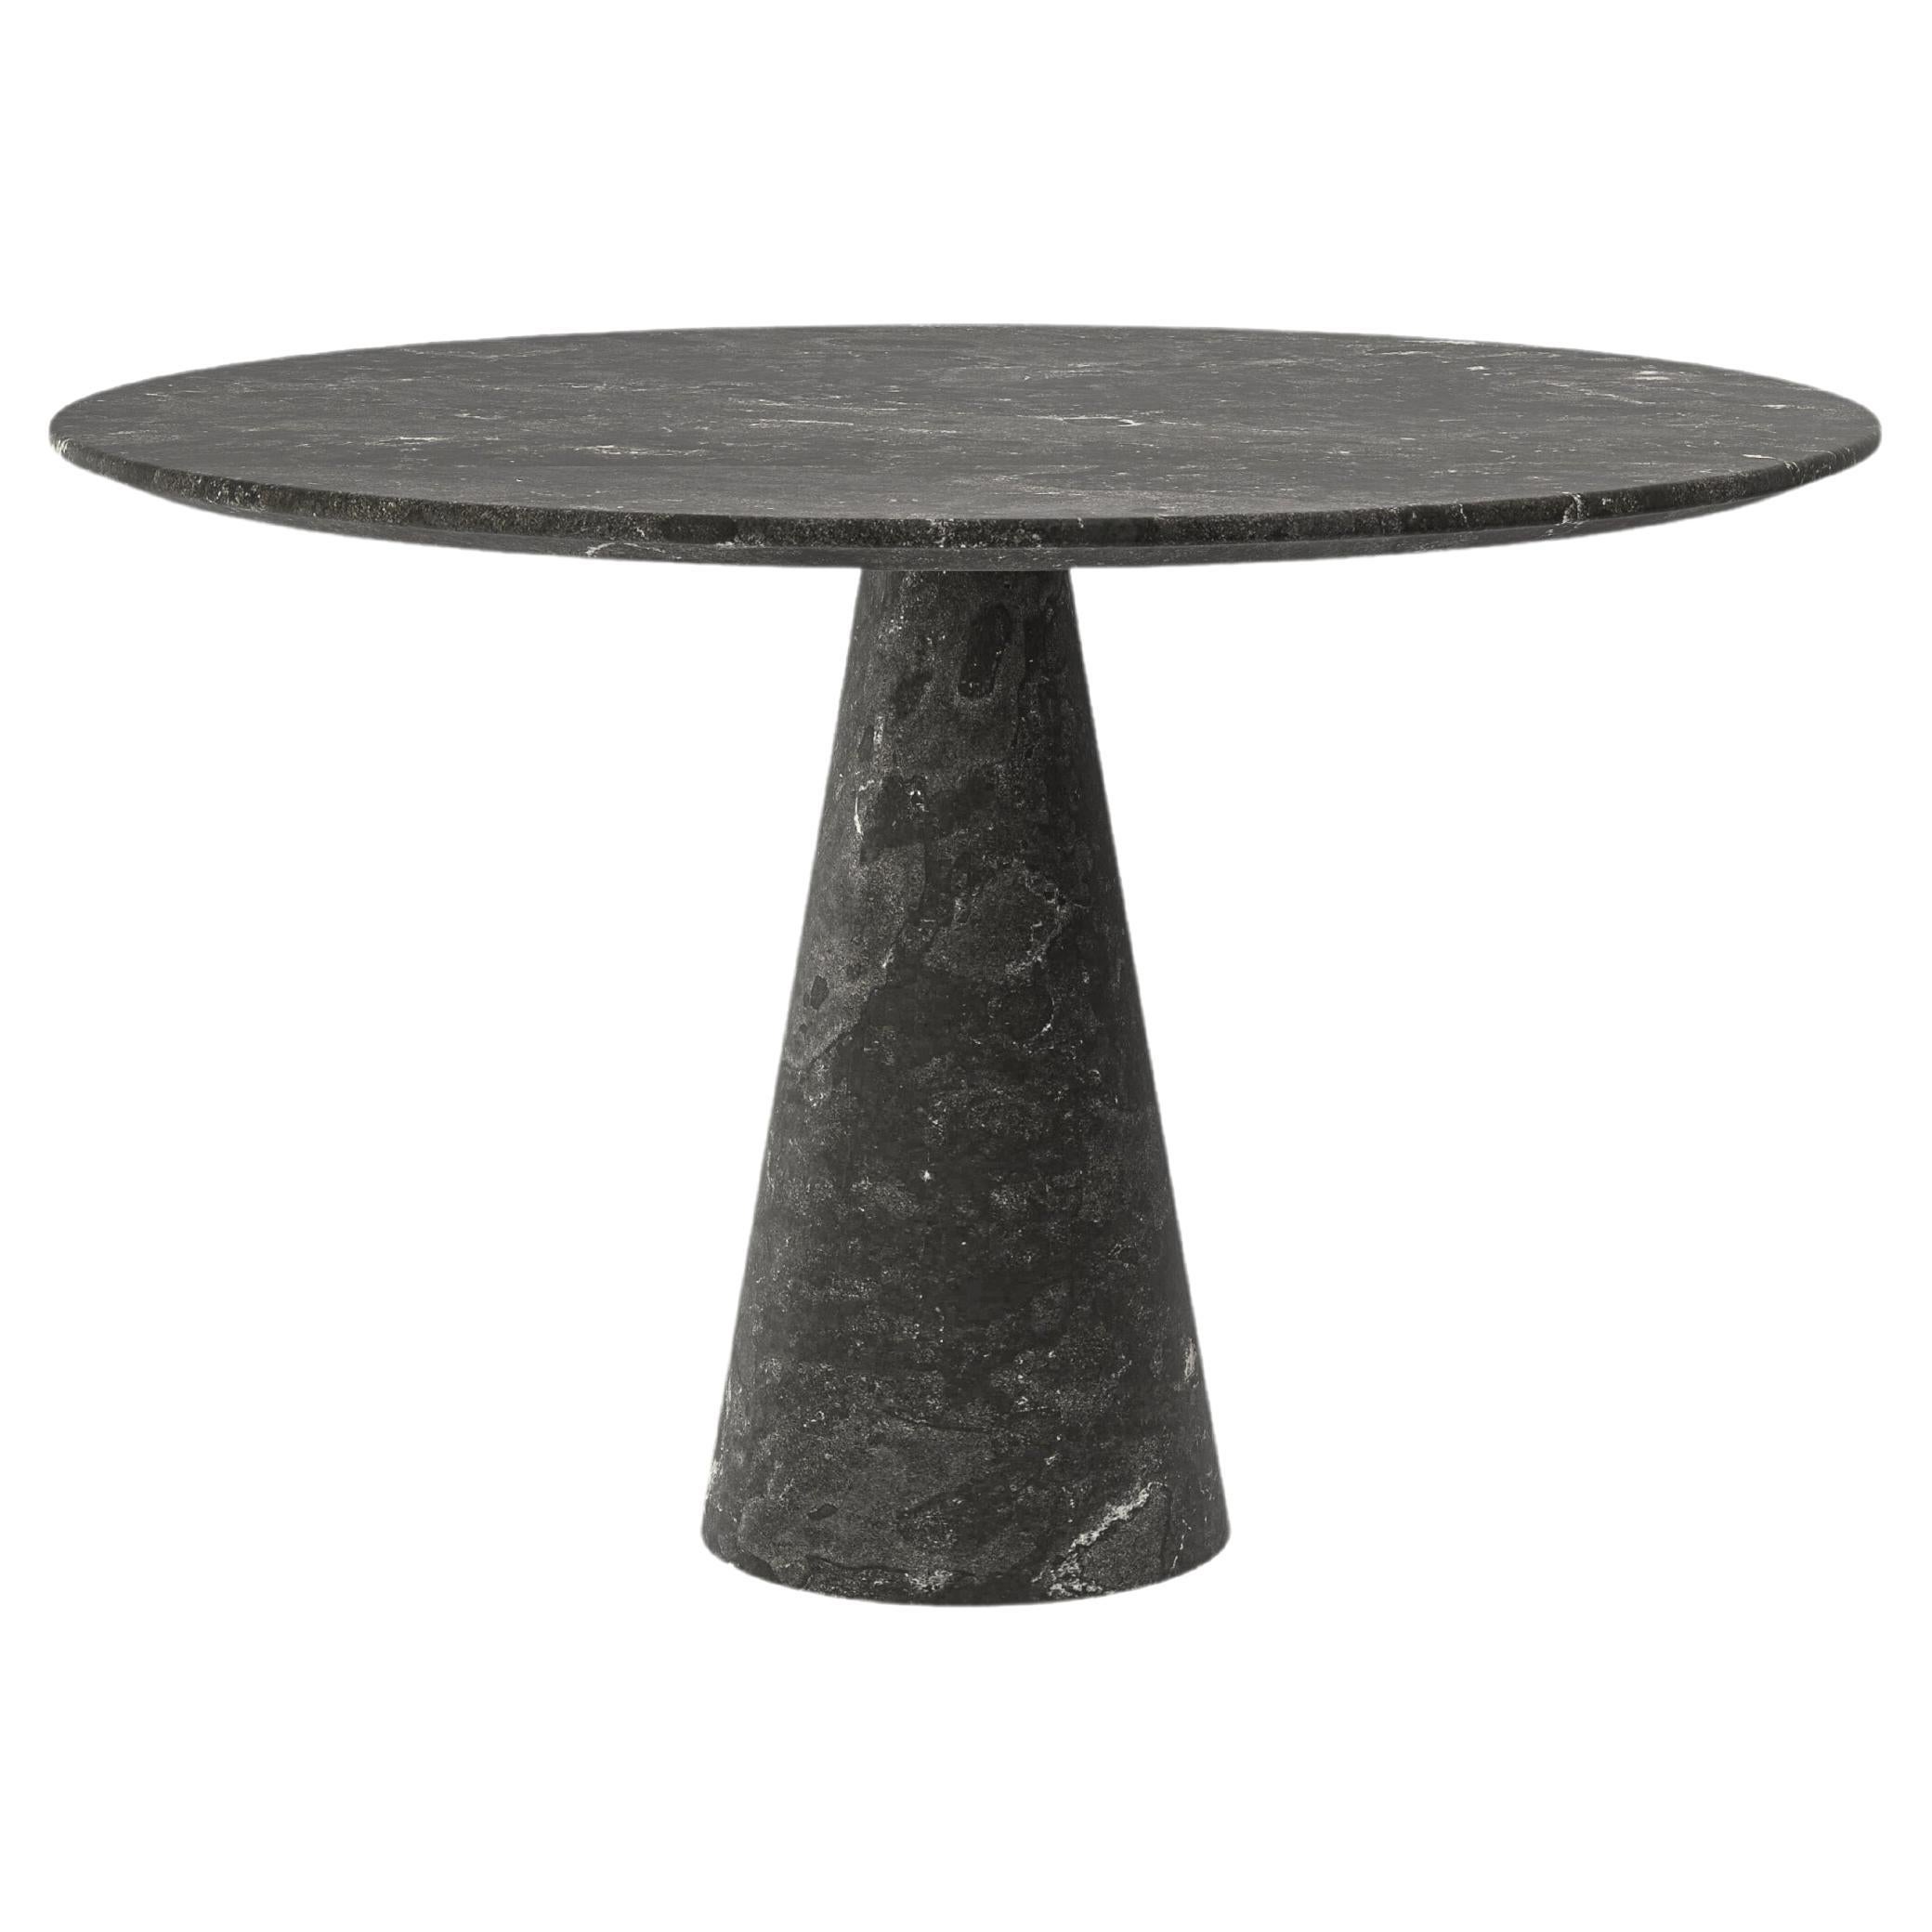 FORM(LA) Cono Round Dining Table 48”L x 48”W x 30”H Nero Petite Granite